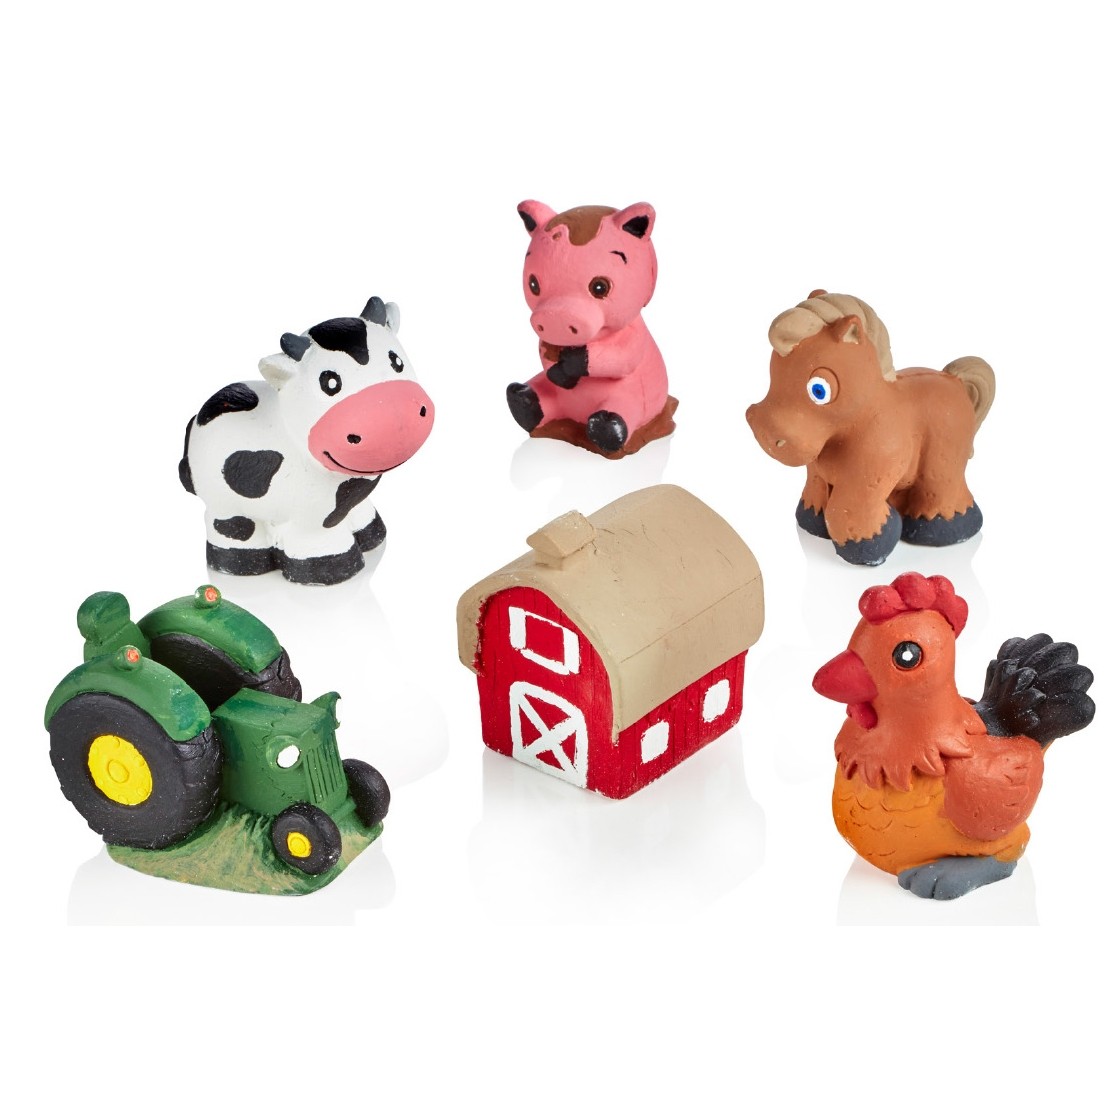 Plaster Farm Figurines Set